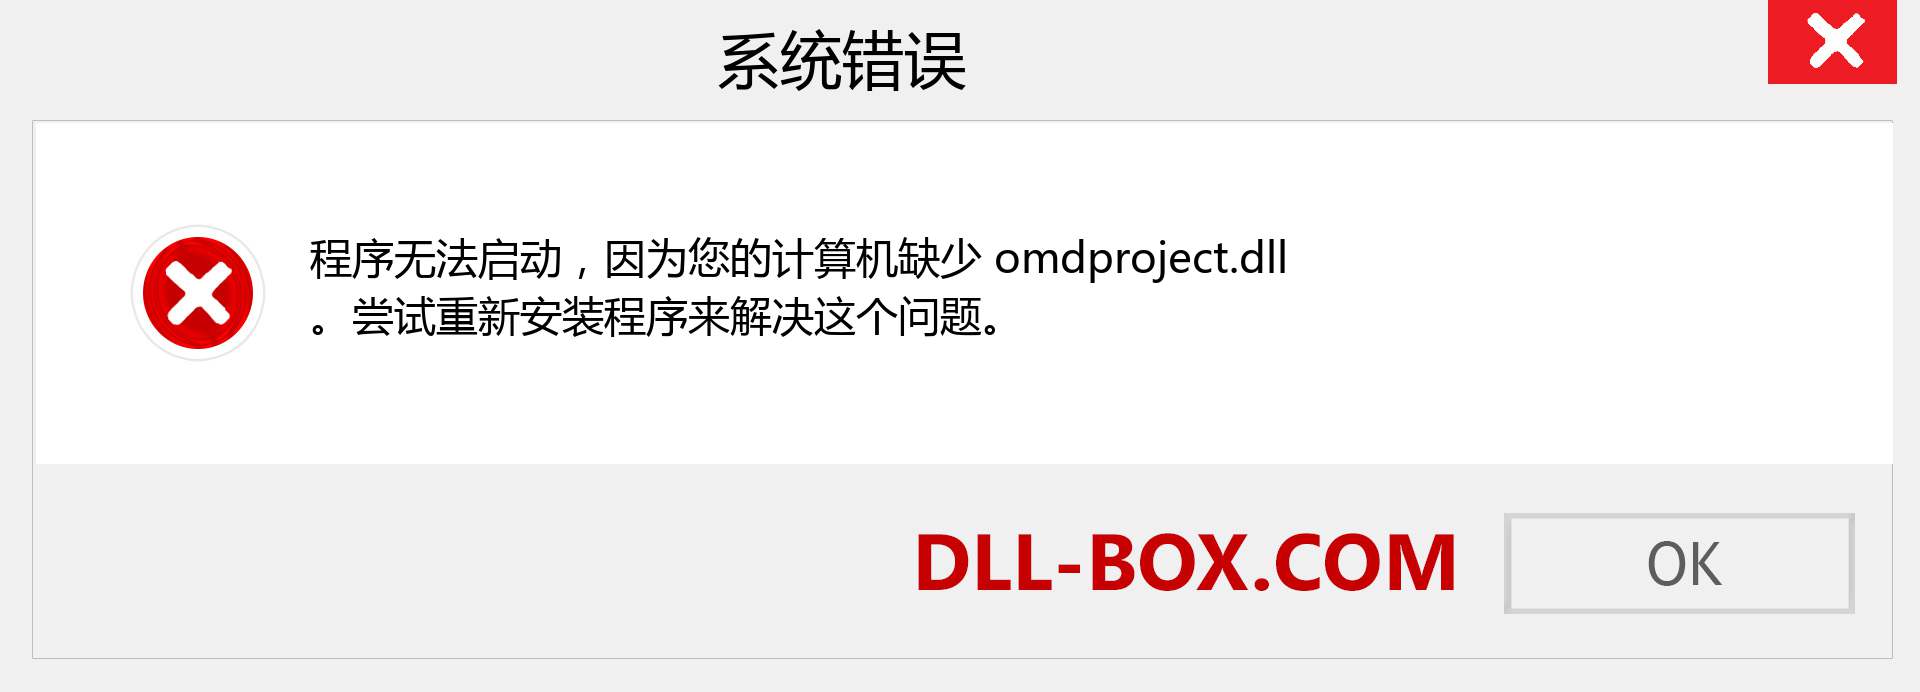 omdproject.dll 文件丢失？。 适用于 Windows 7、8、10 的下载 - 修复 Windows、照片、图像上的 omdproject dll 丢失错误